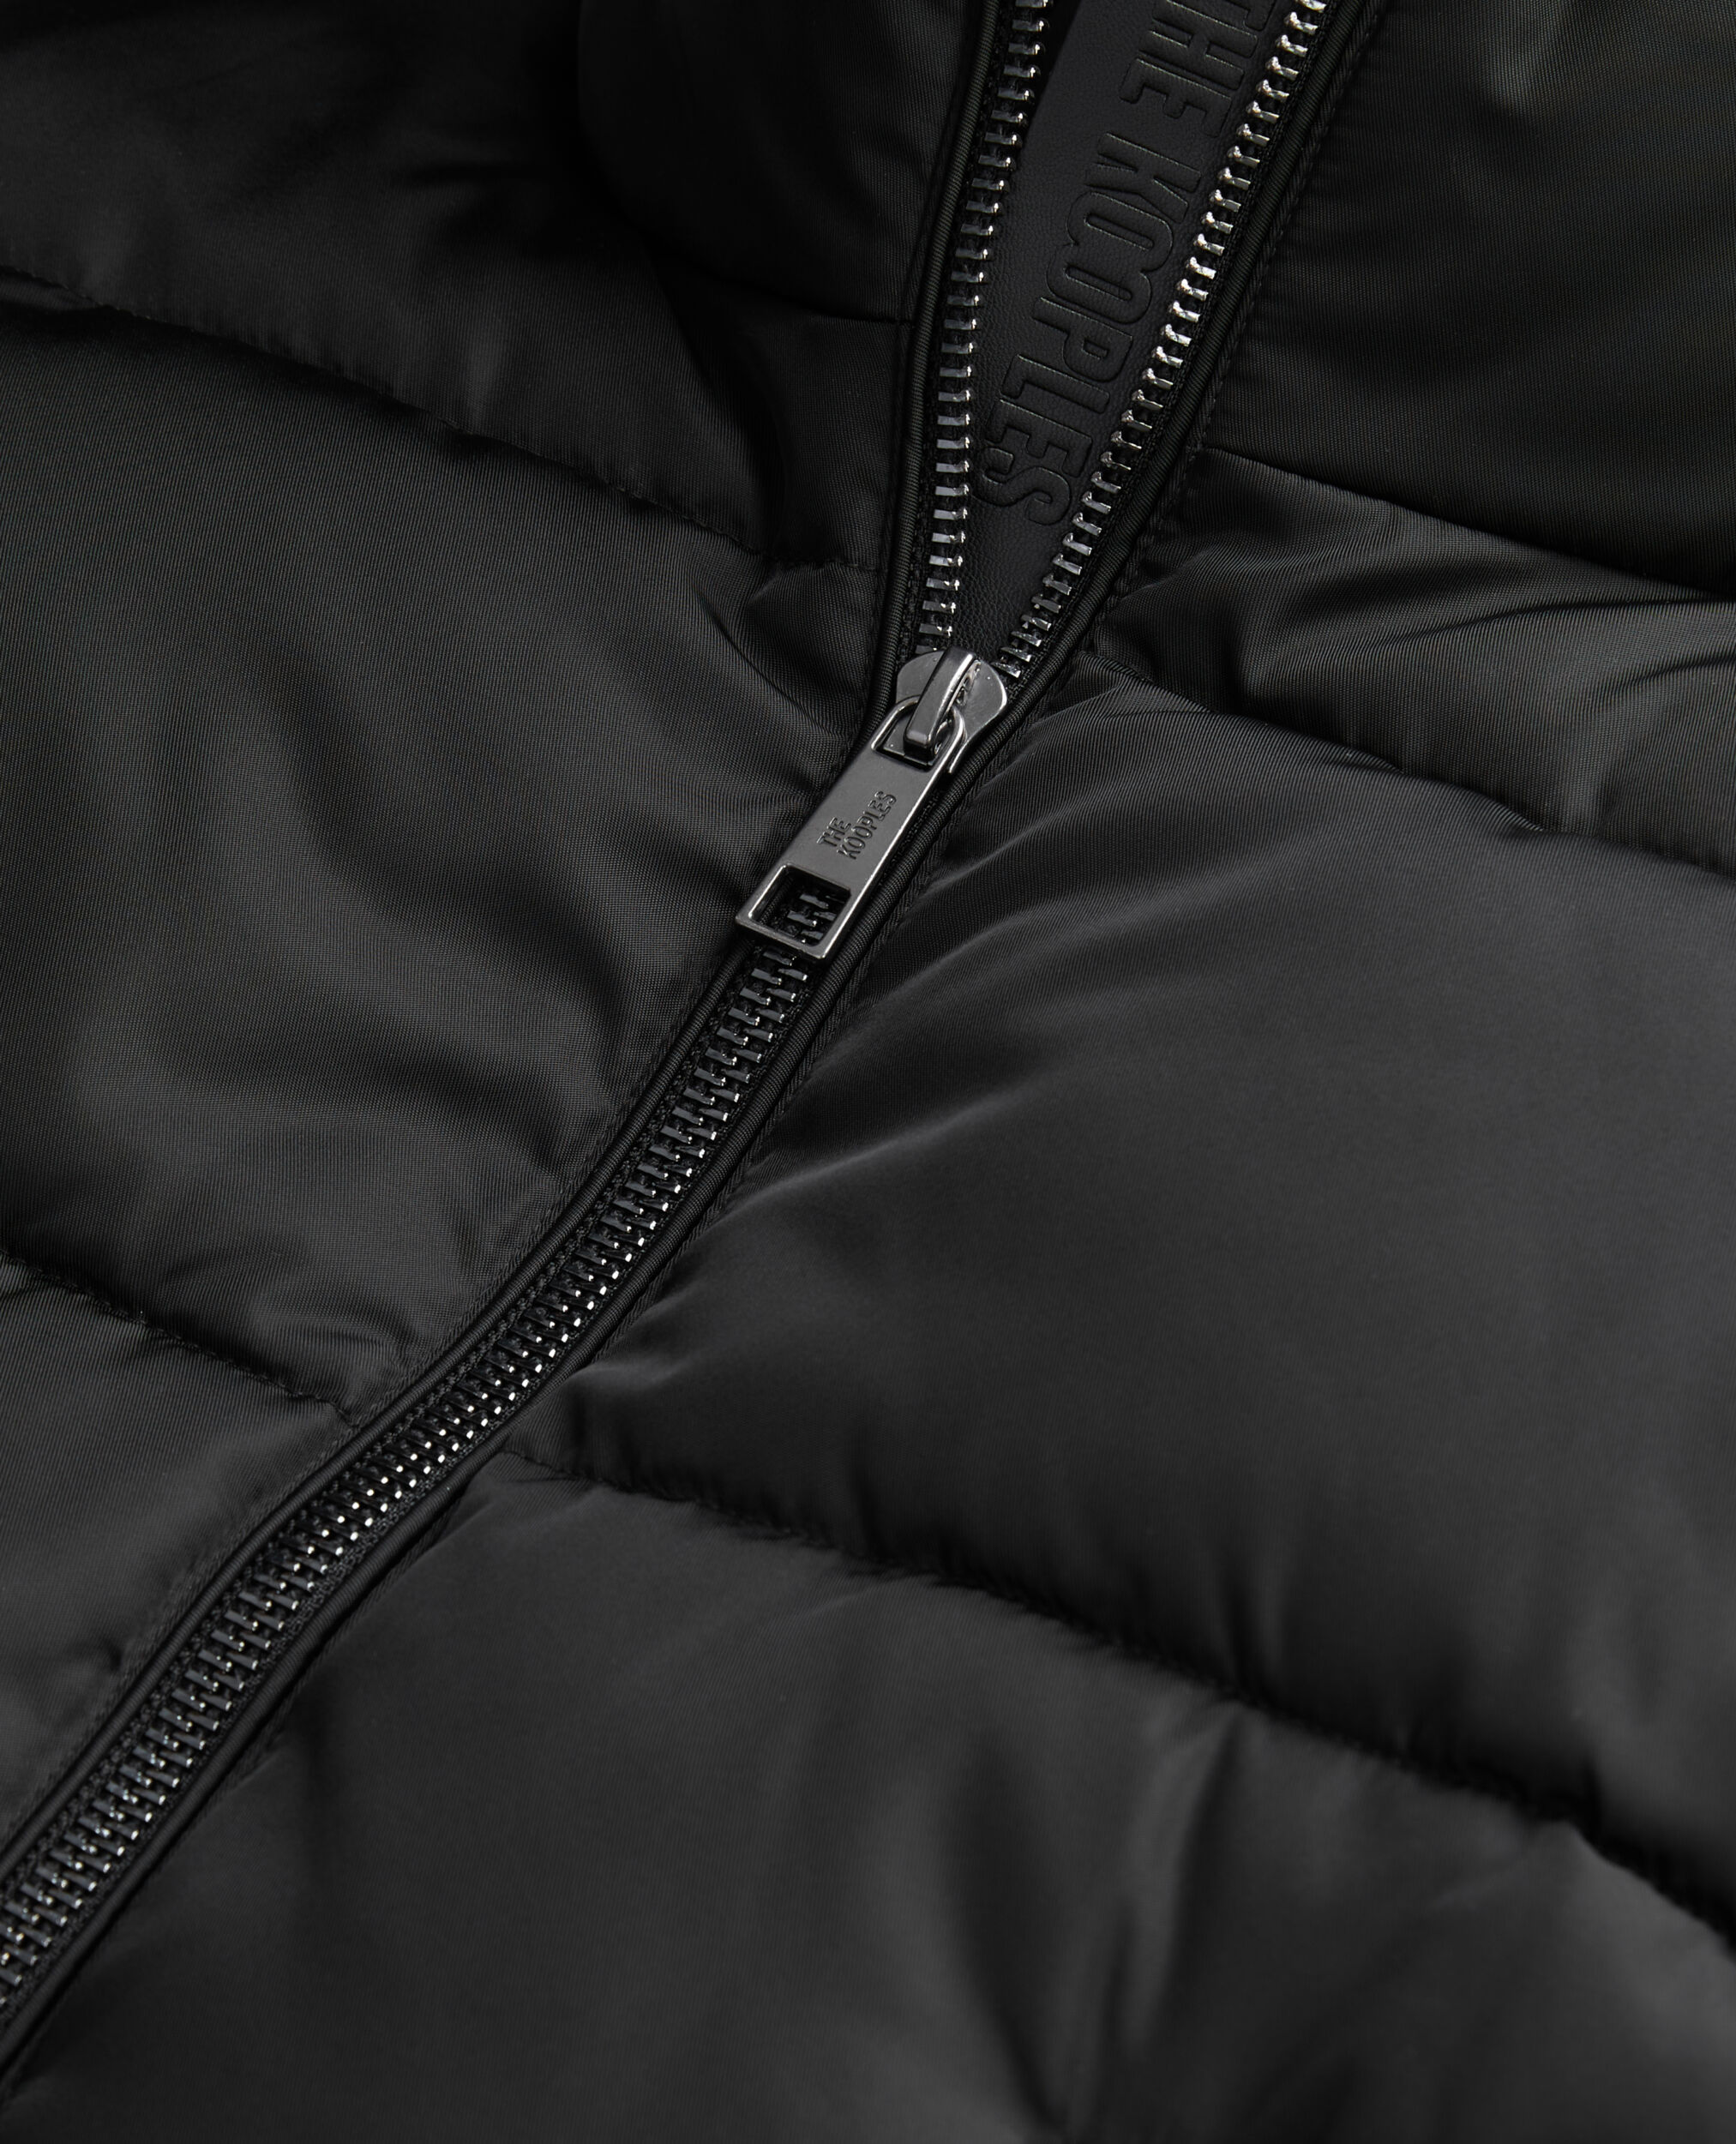 Black puffer jacket, BLACK, hi-res image number null